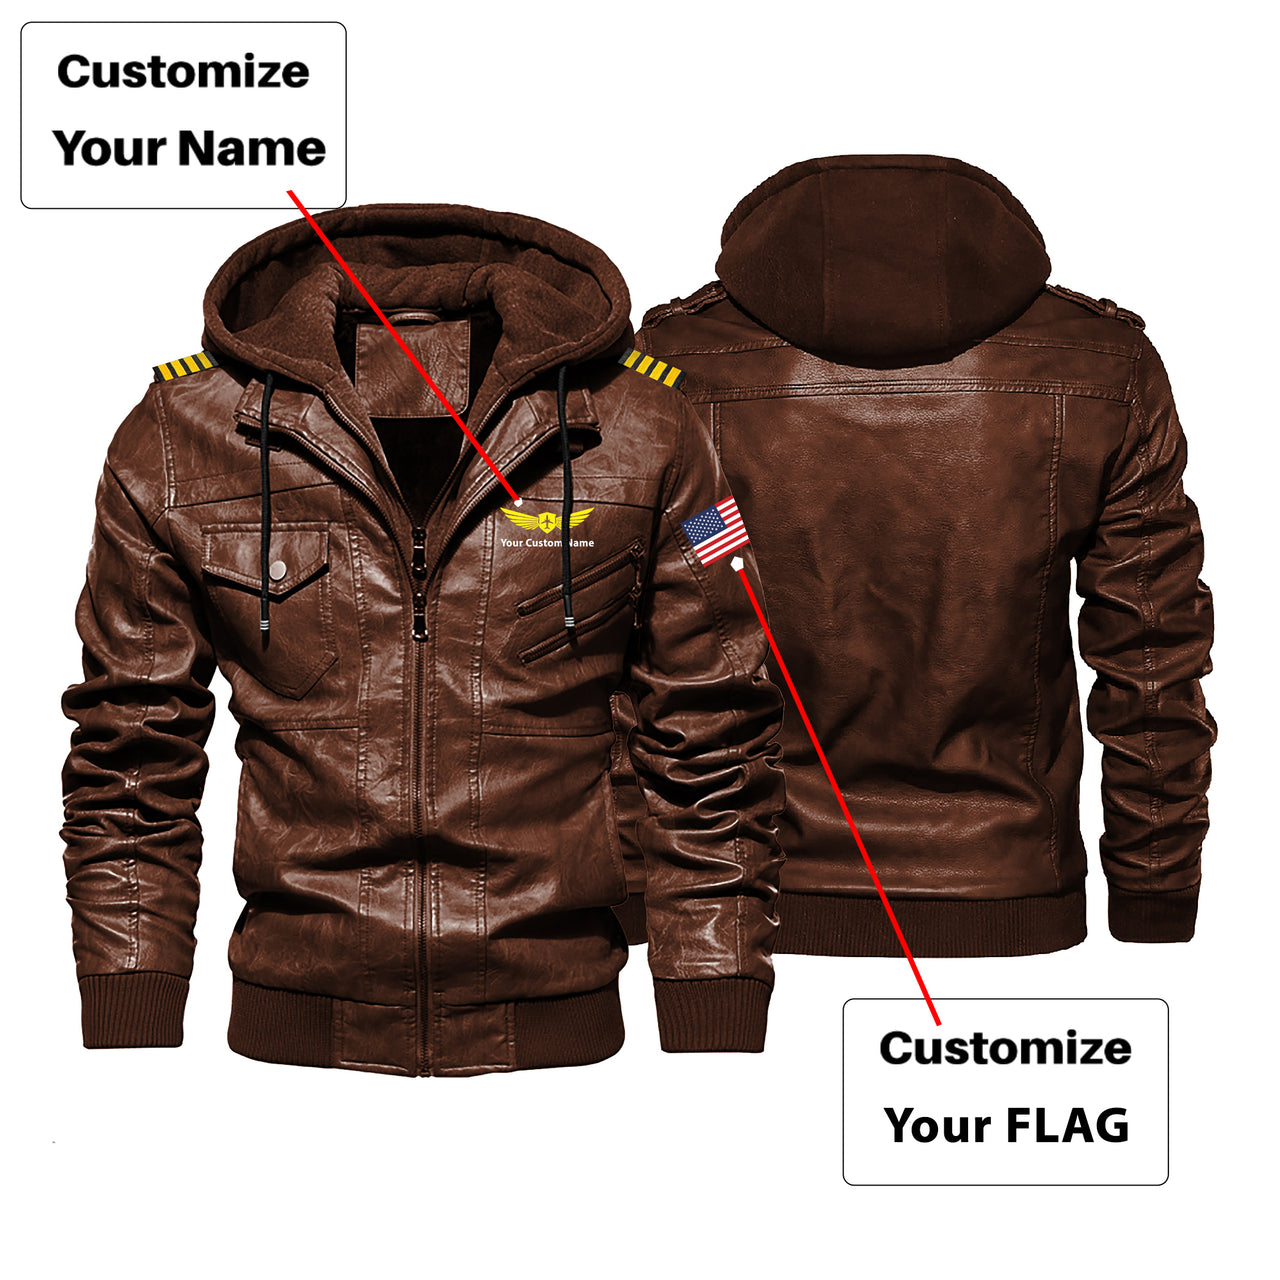 Custom Flag & Name with EPAULETTES "Badge 2" Designed Hooded Leather Jackets